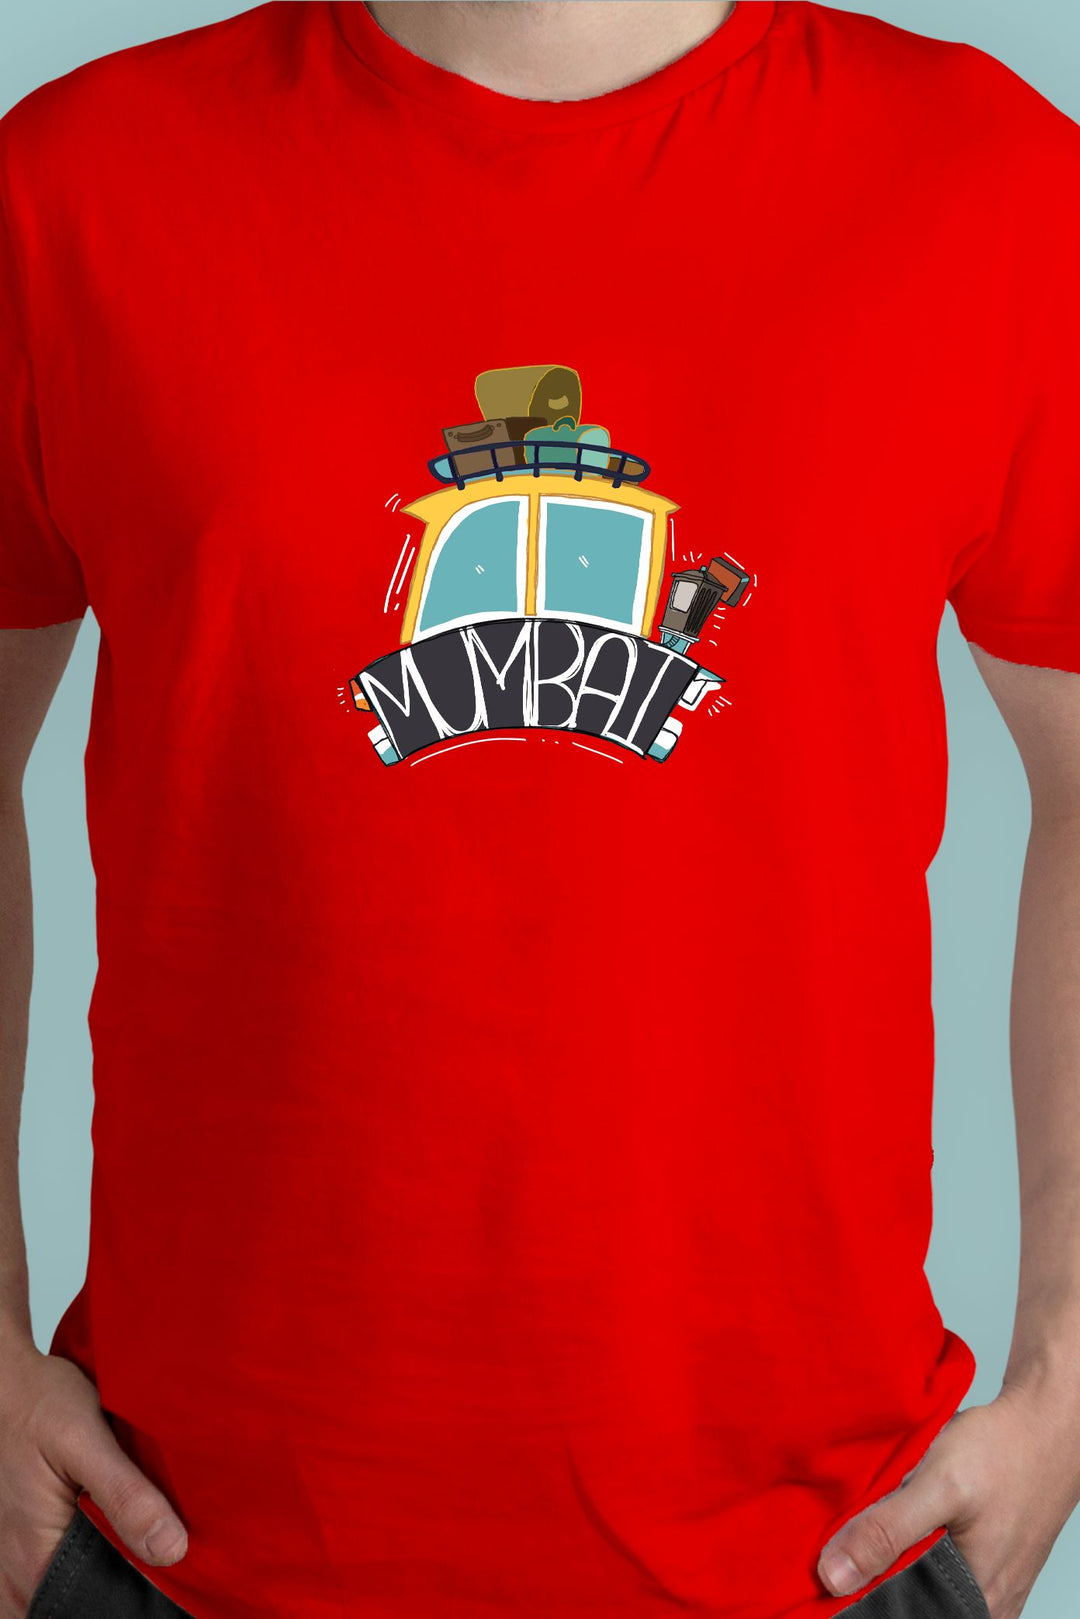 Mumbai Taxi T-shirt